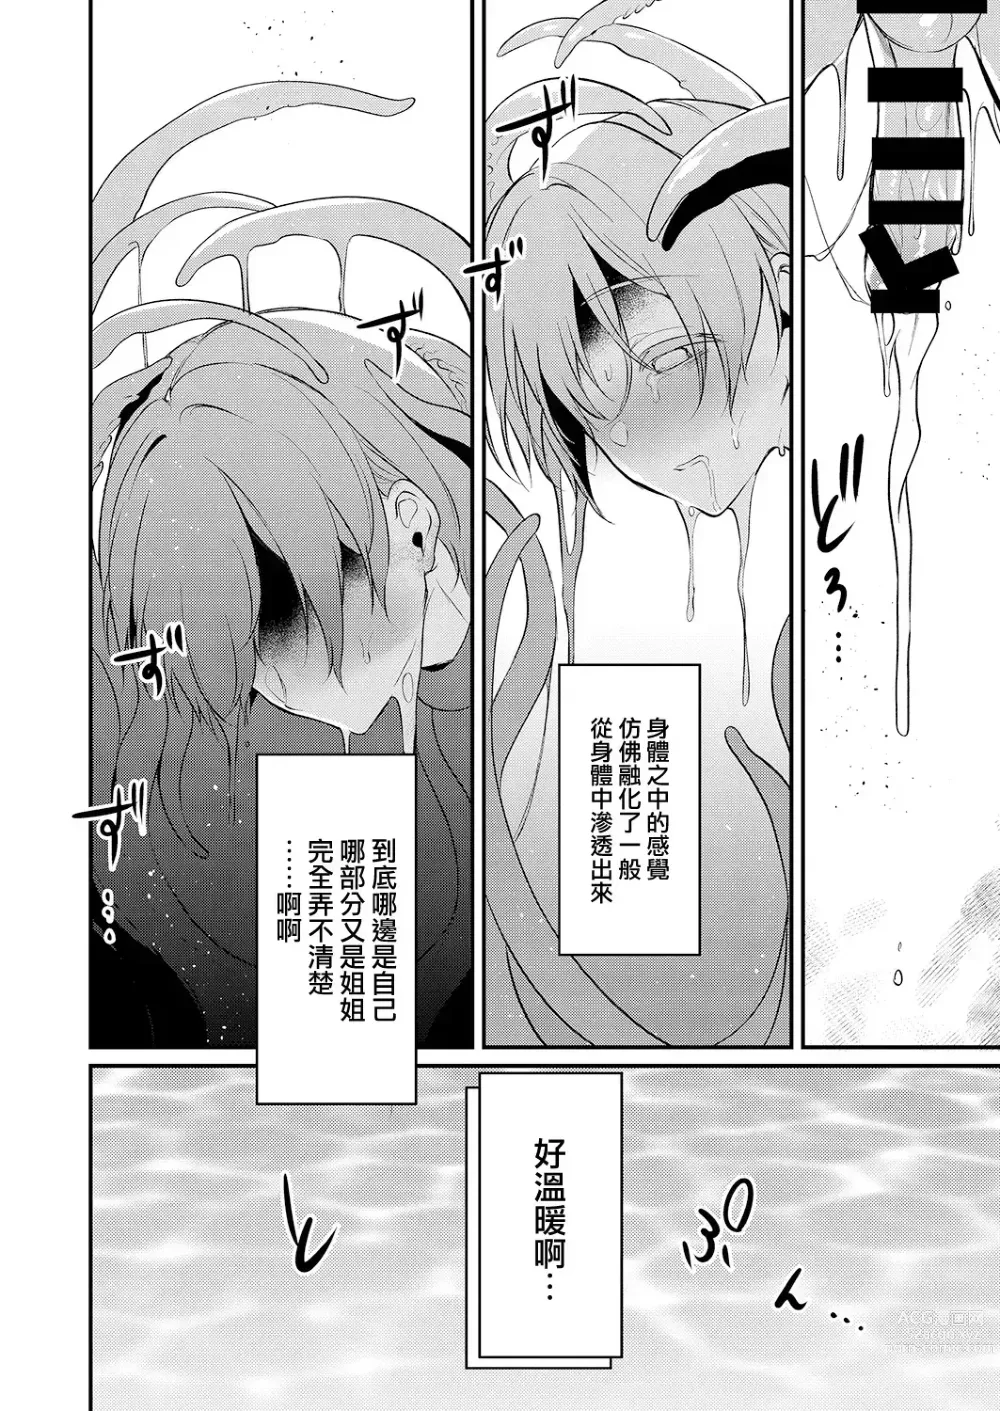 Page 303 of doujinshi Ane Naru Mono compilation